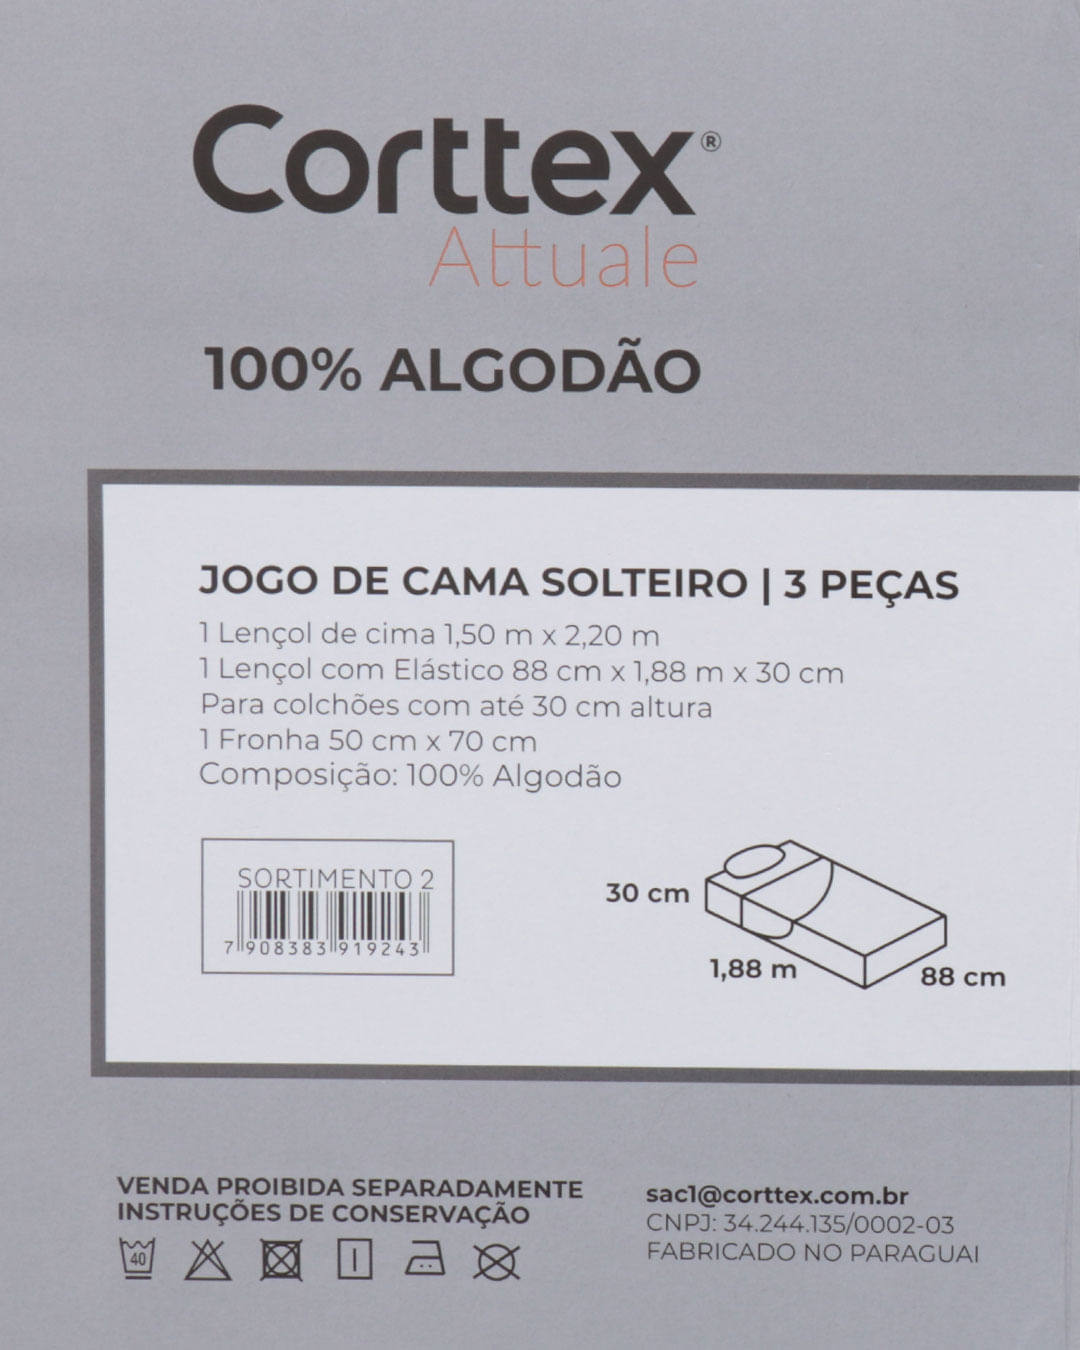 Jogo-De-Cama-Solteiro-Algodao-Attuale-Corttex-Floral-Rosa